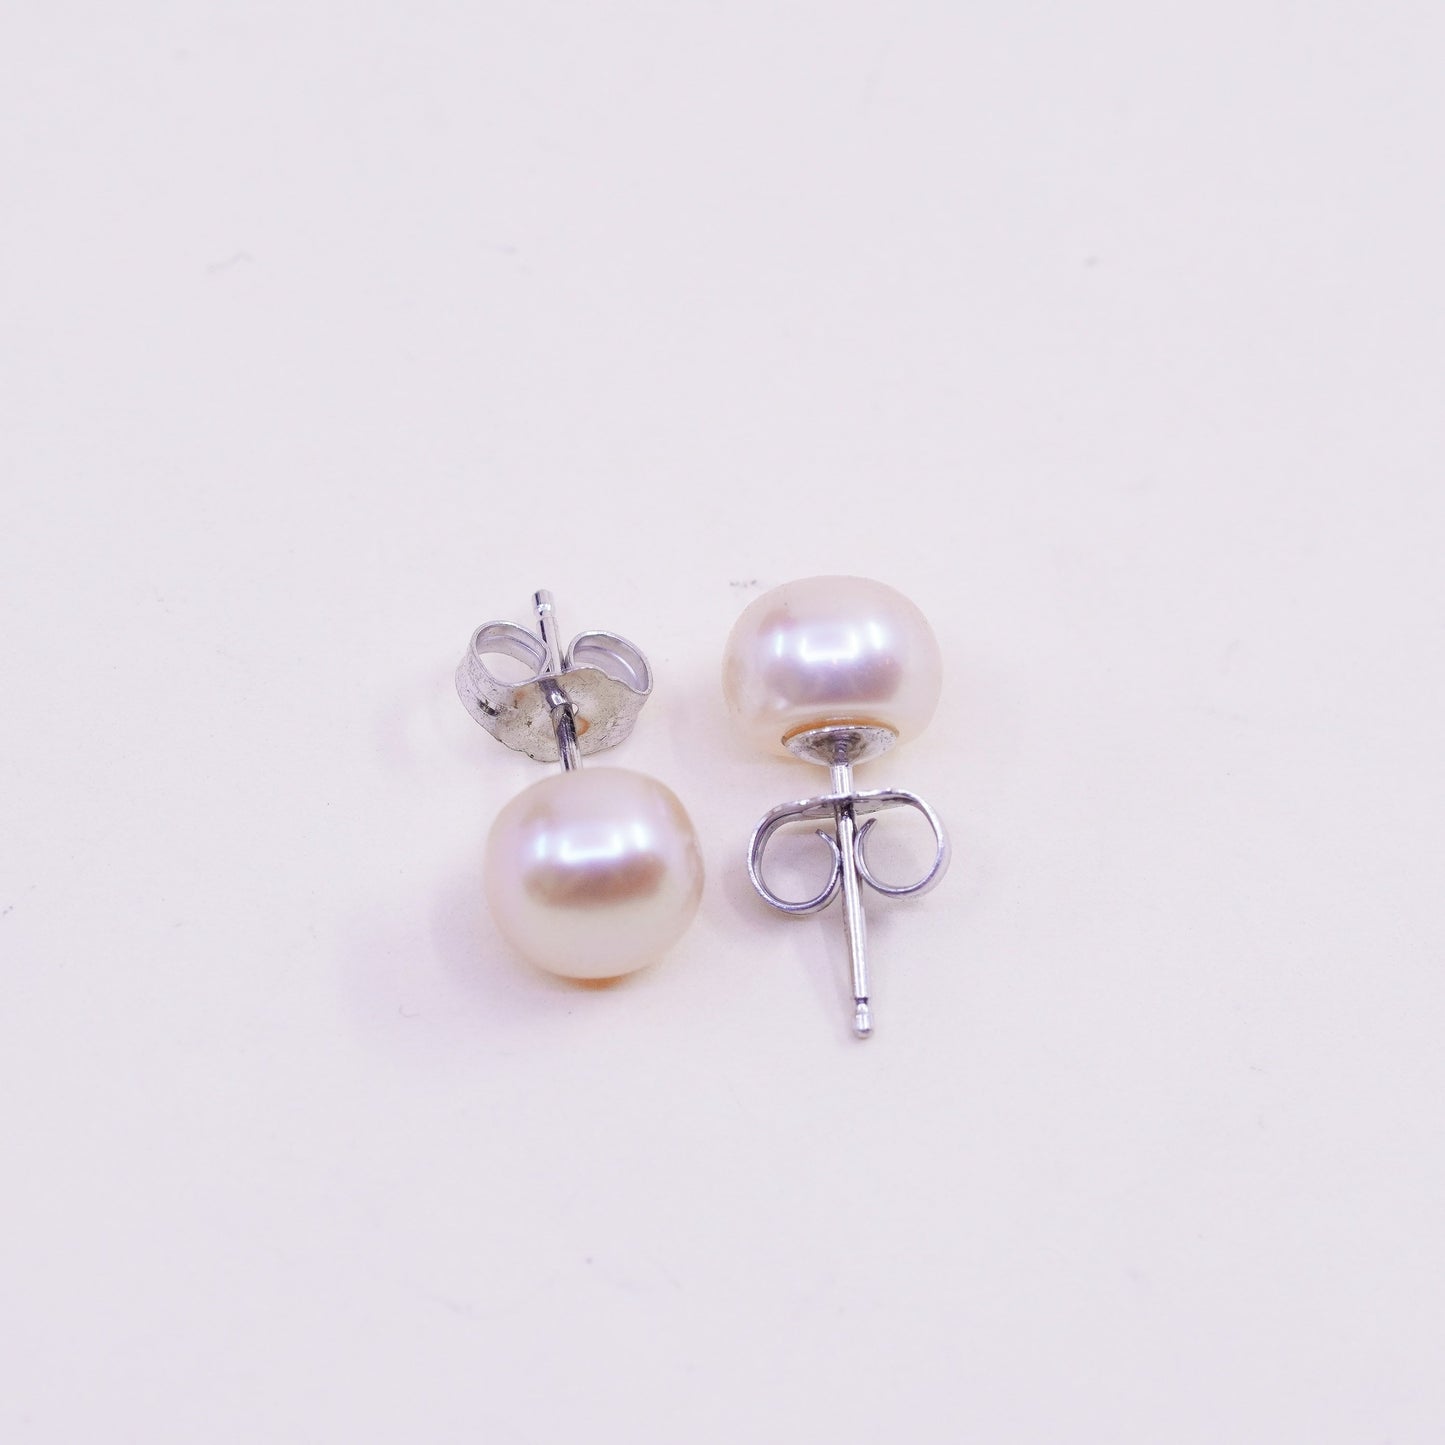 Vintage sterling silver earrings, 925 studs with orange pearl